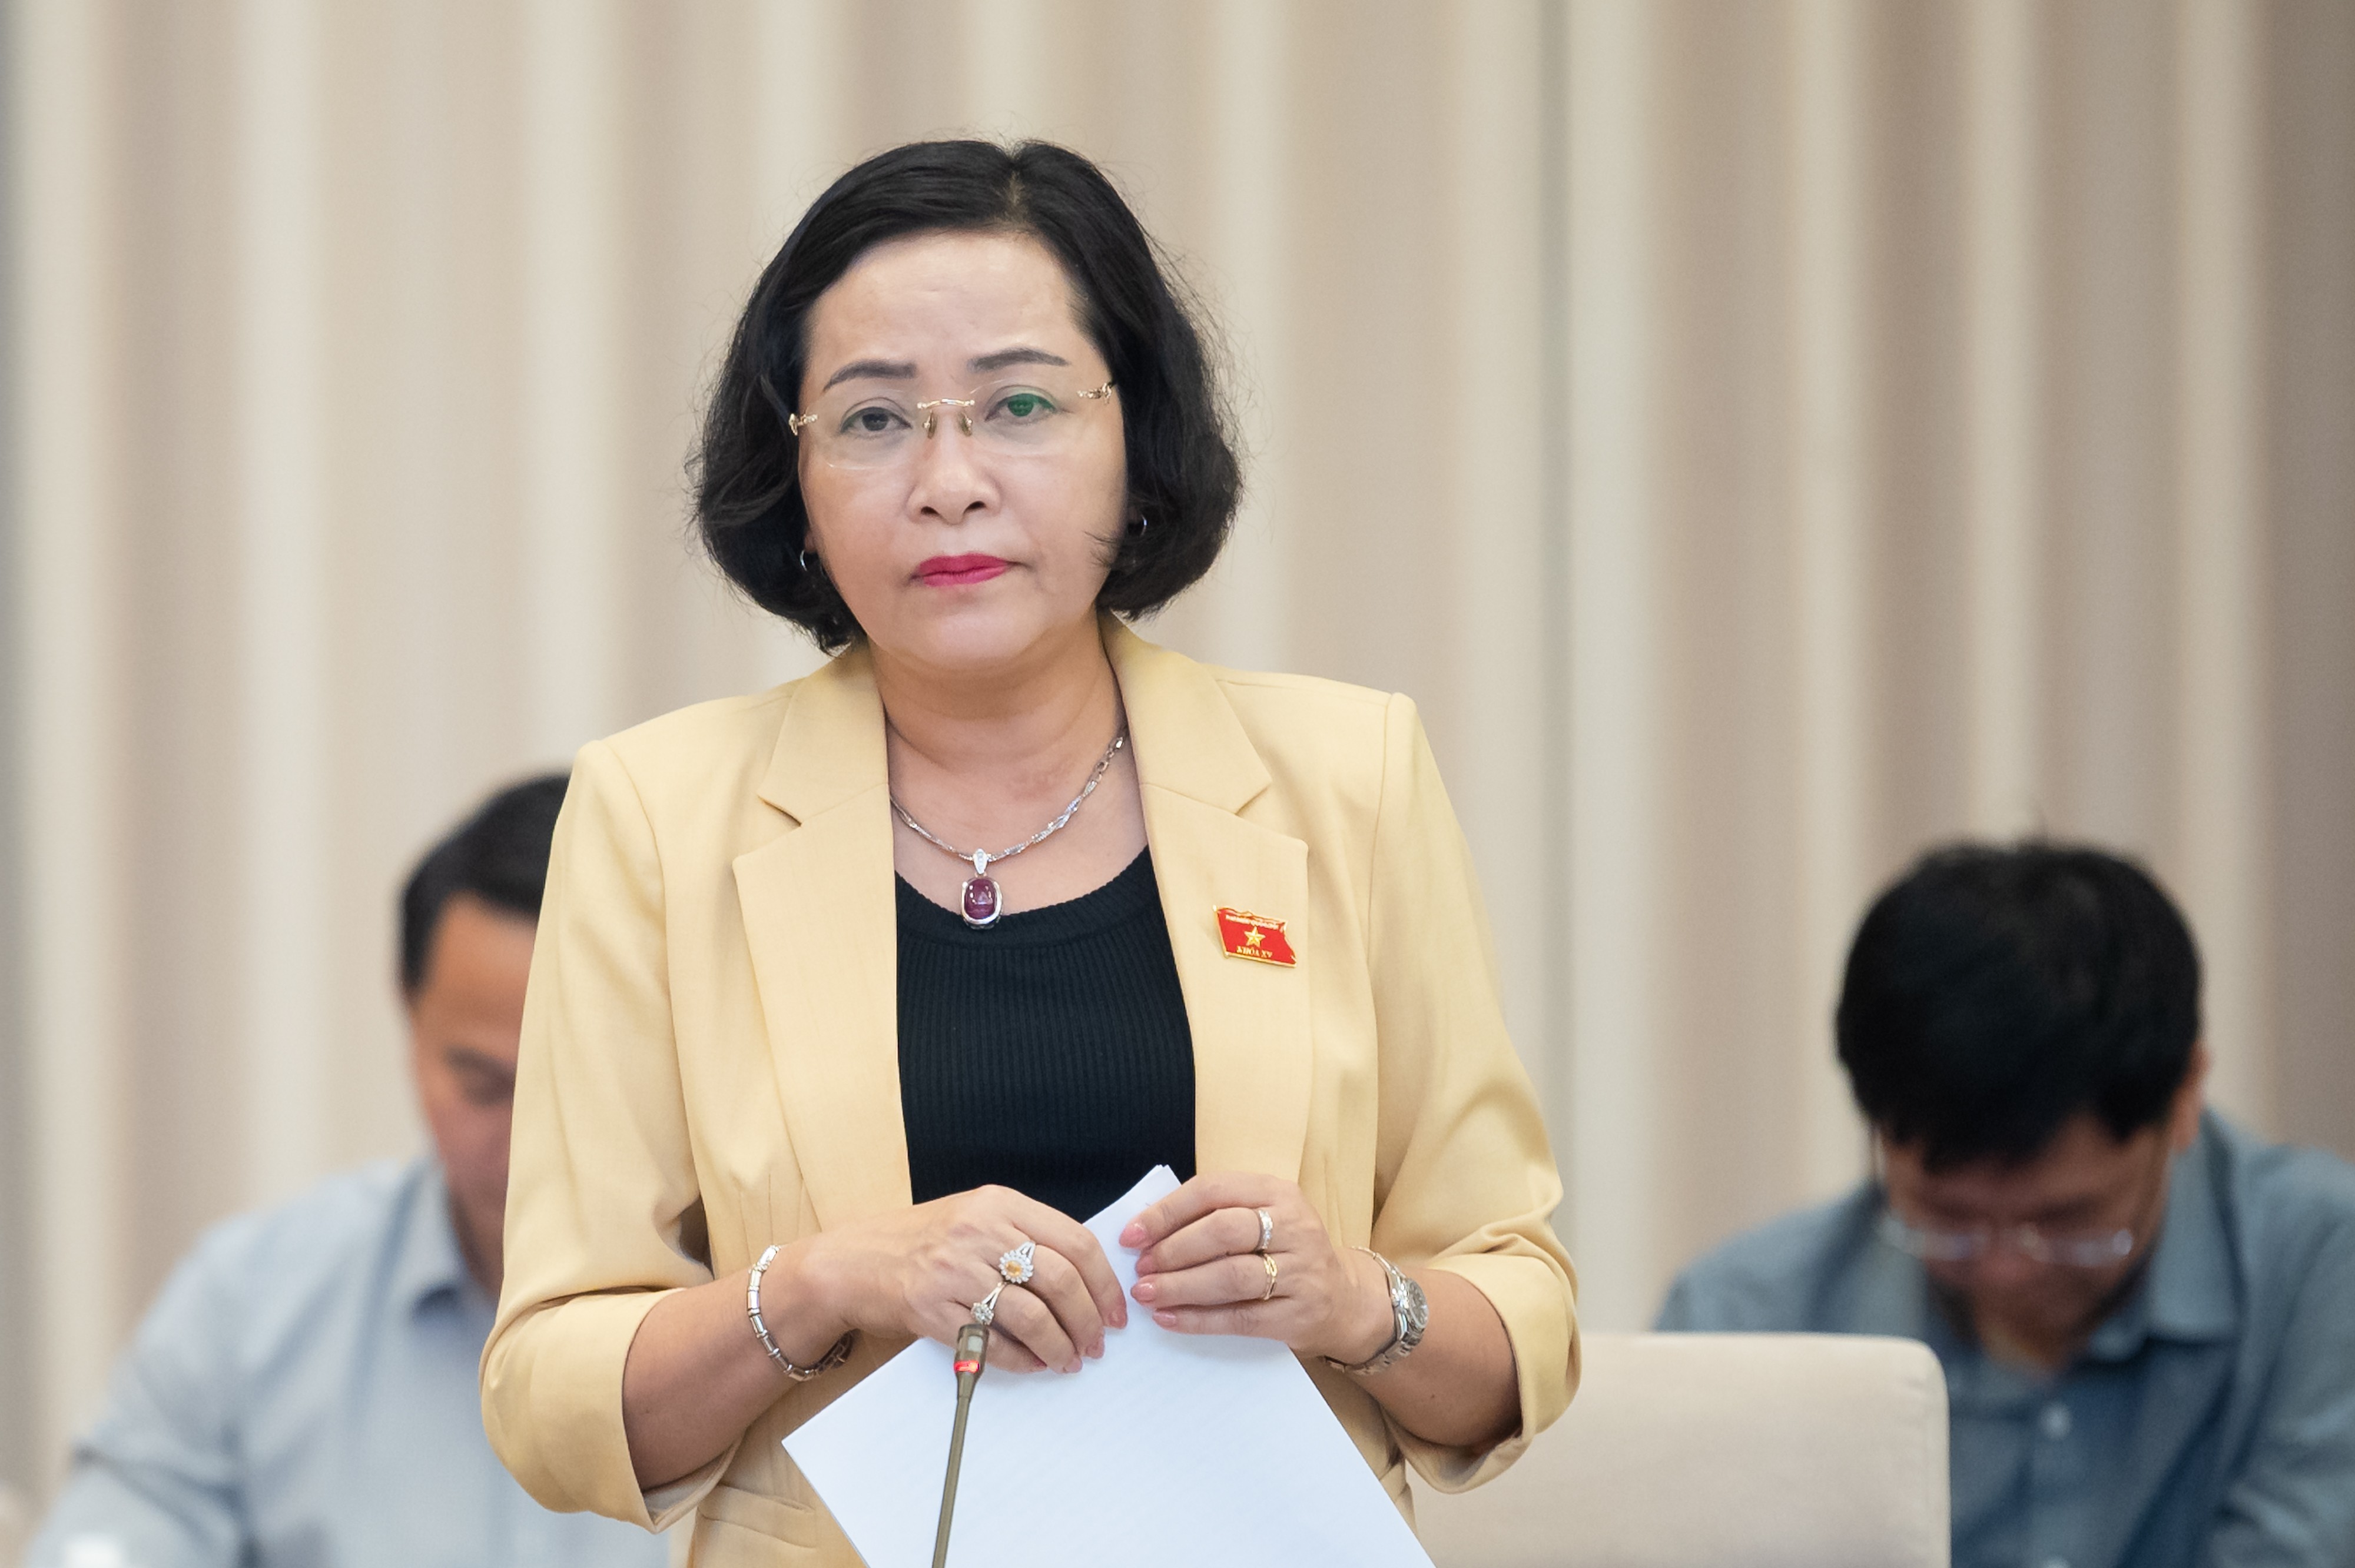 Trưởng ban Công tác đại biểu Nguyễn Thị Thanh trình bày Tờ trình về việc ban hành Nghị quyết của Quốc hội về việc lấy phiếu tín nhiệm, bỏ phiếu tín nhiệm tại Quốc hội, Hội đồng nhân dân